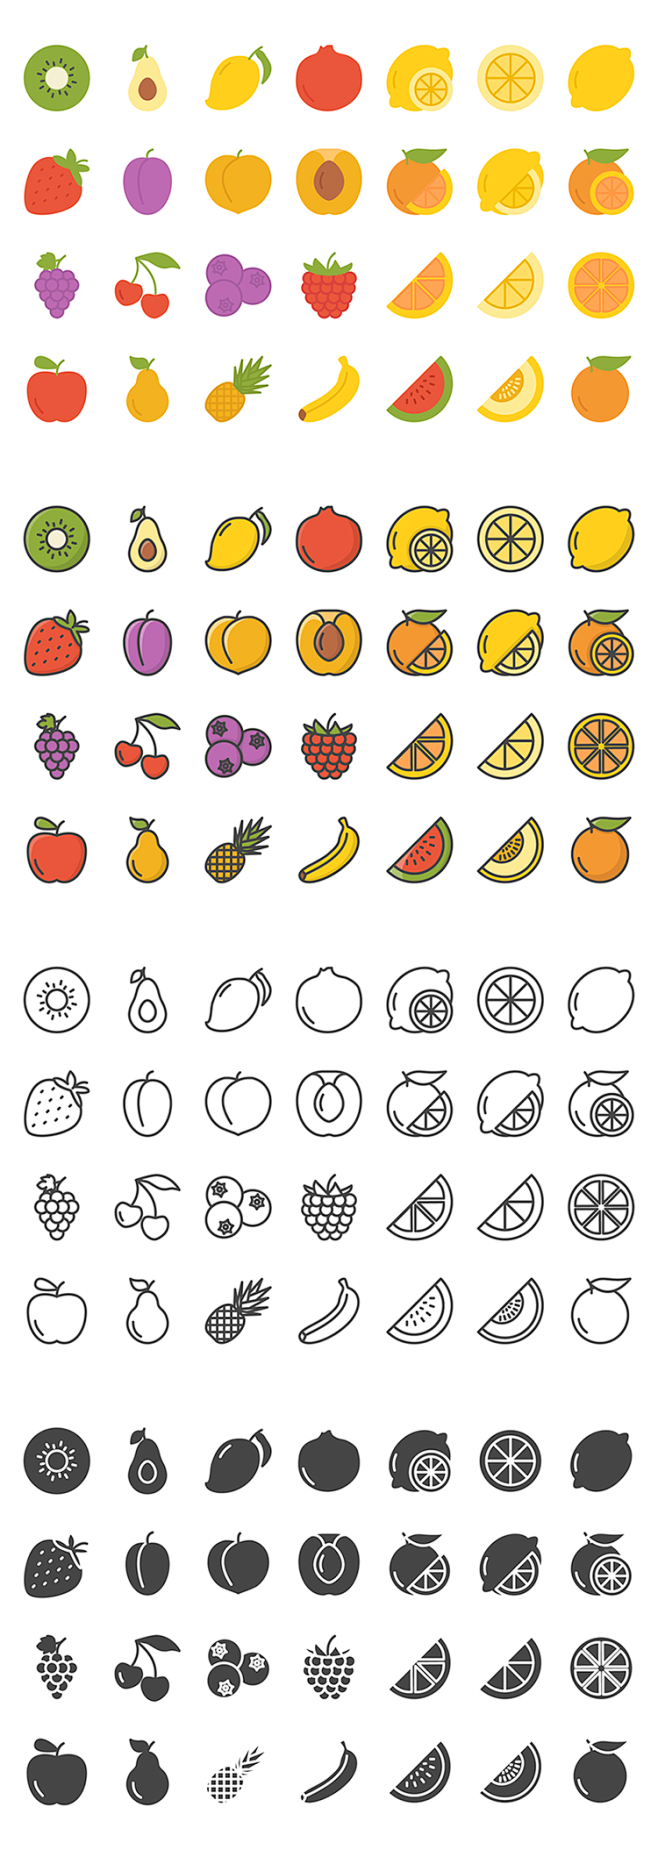 #水果icon#
线条轮廓彩色水果苹果菠...